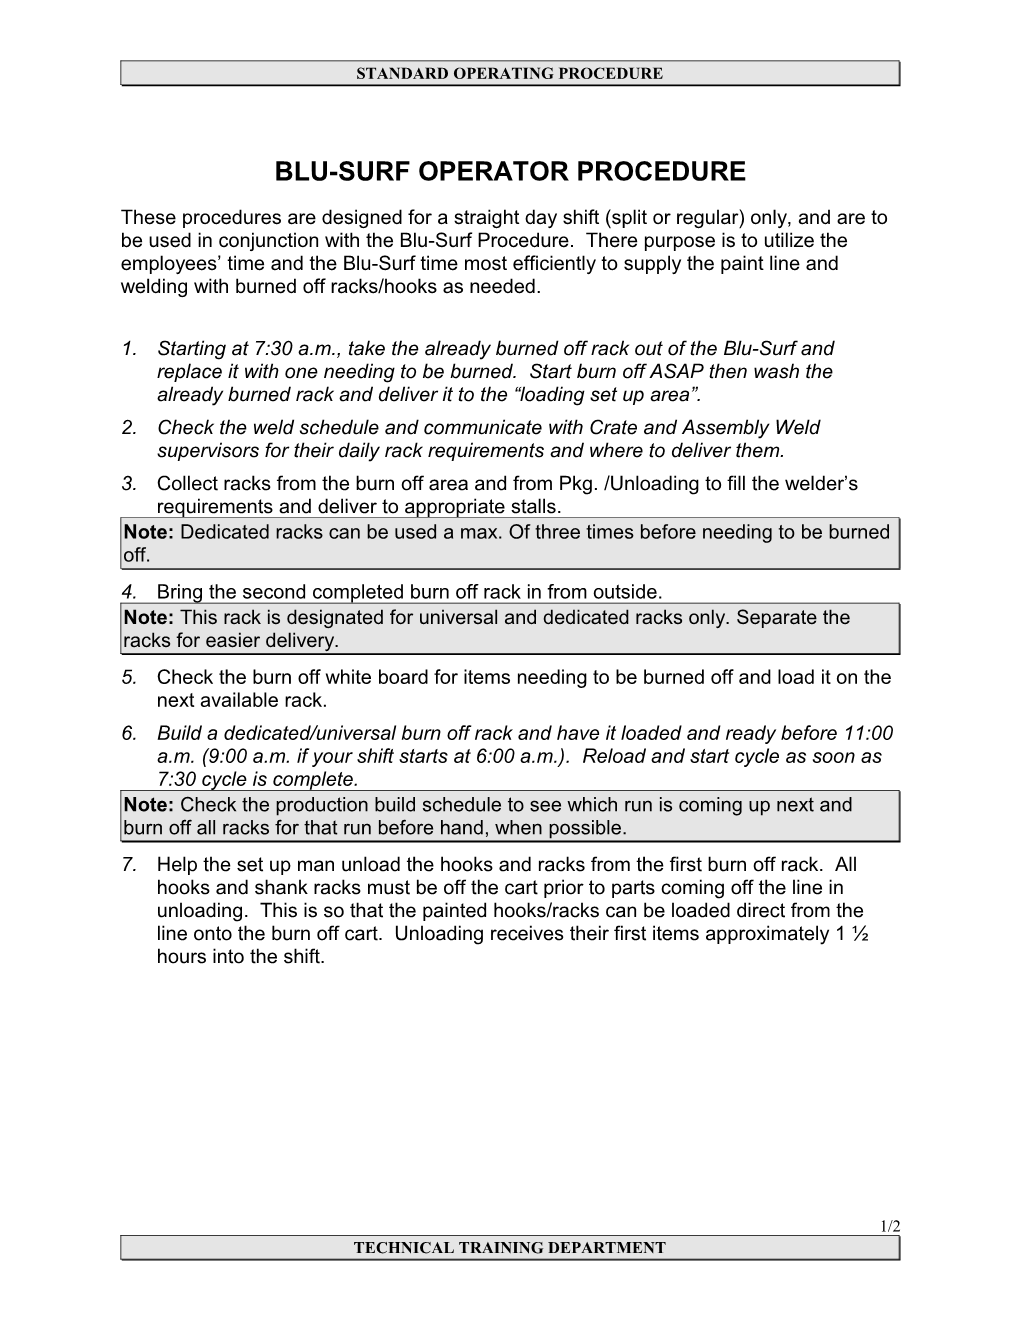 Blu-Surf Operator Procedure